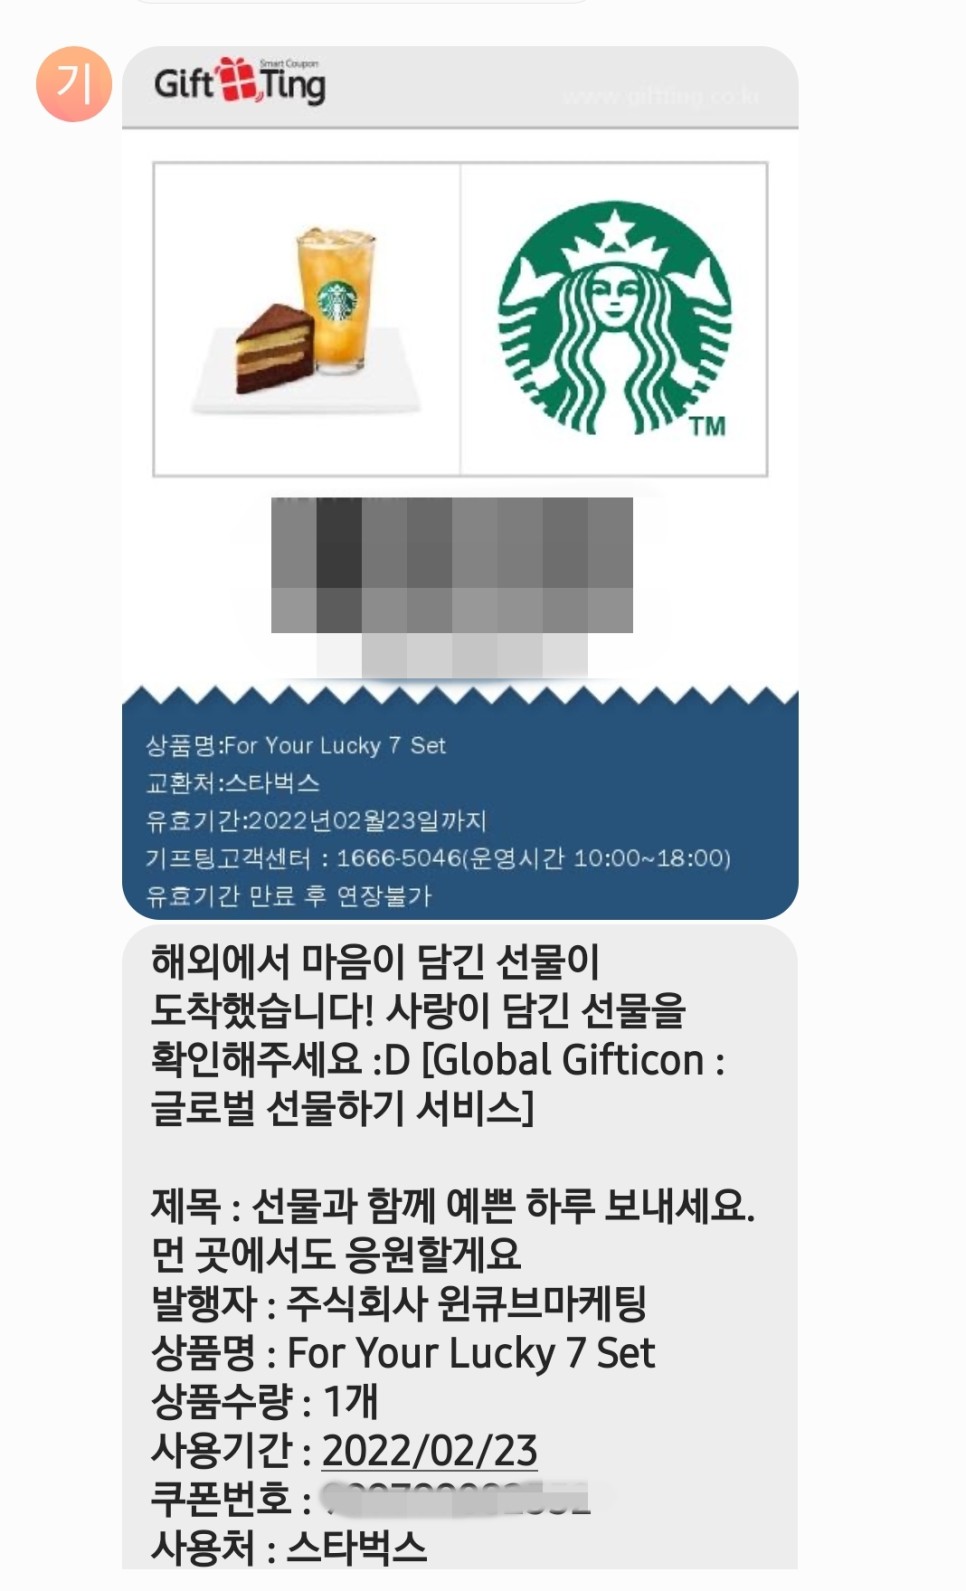 해외에서 한국으로 기프티콘 선물 보내는 방법, 글로벌 기프티콘